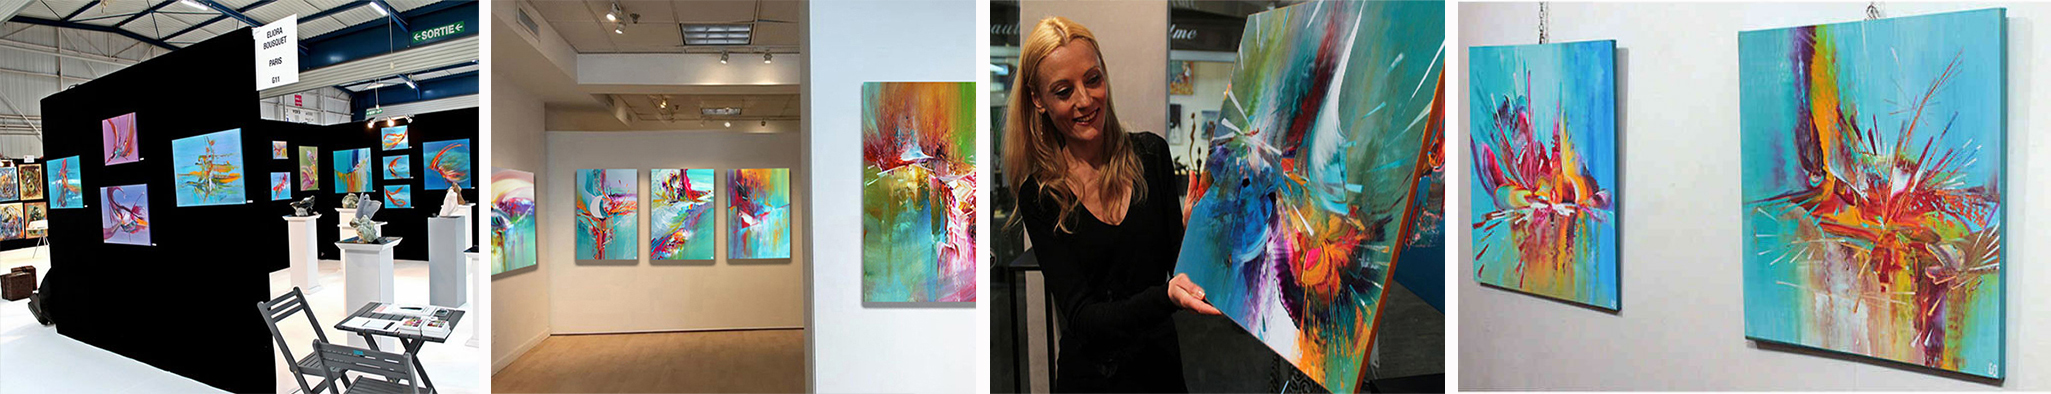 Painter Eliora Bousquet exhibiting her artworks in Paris